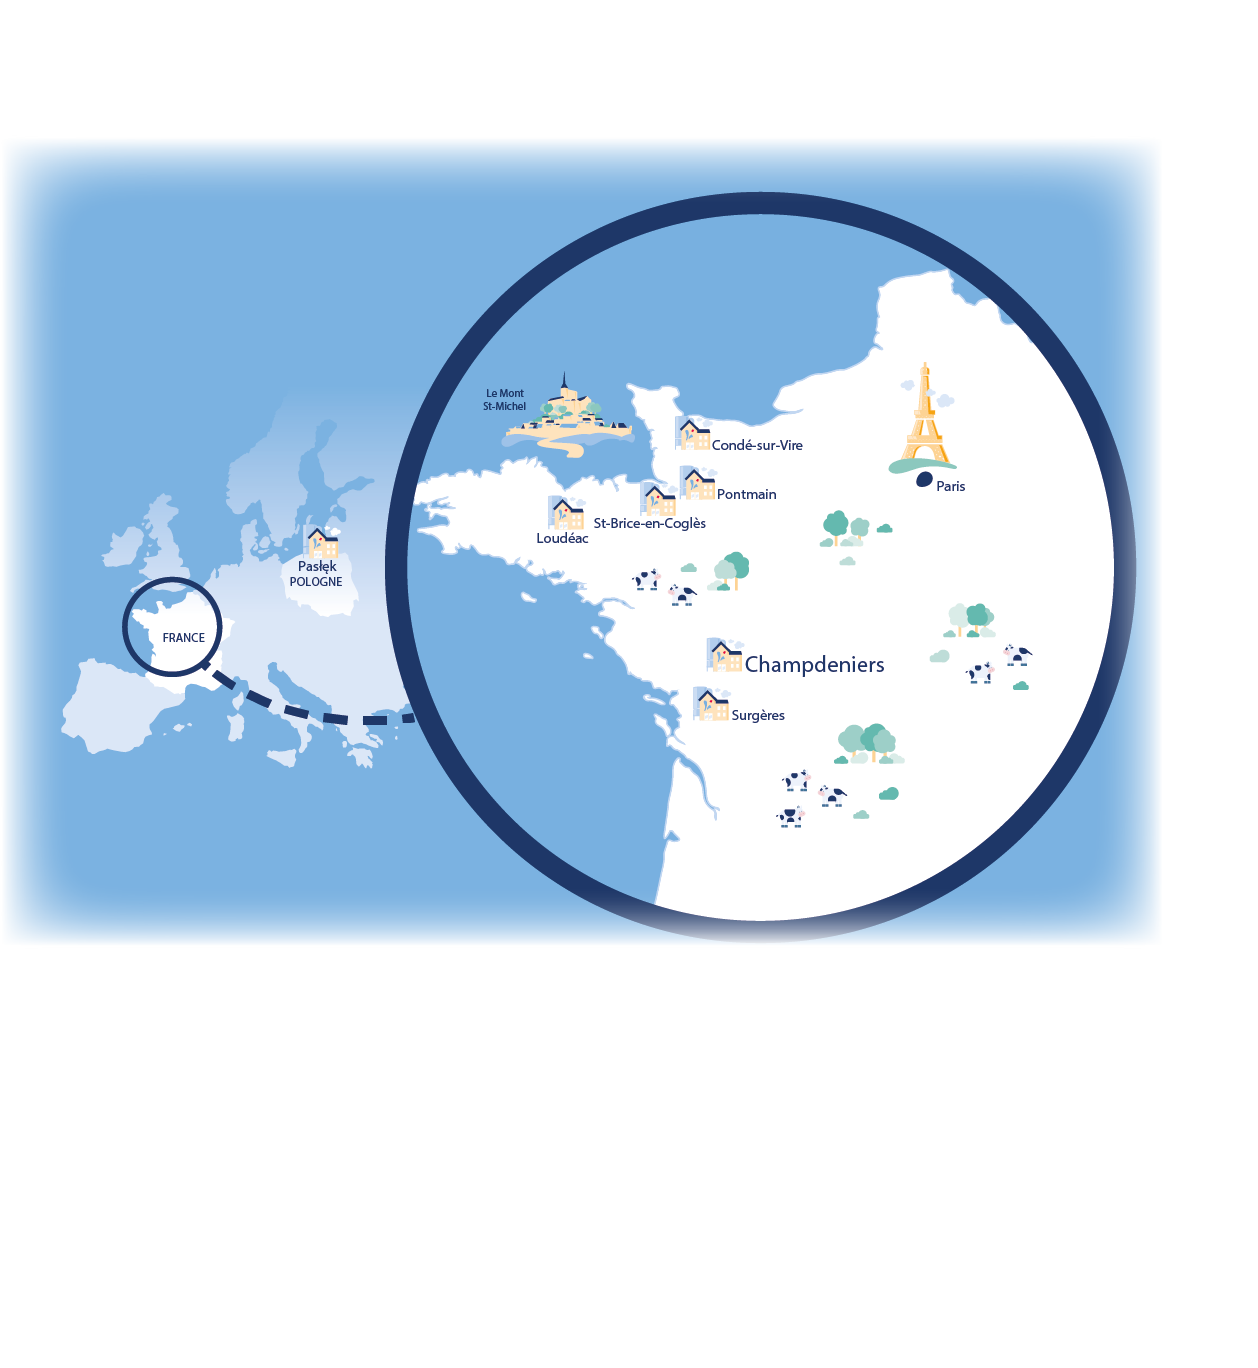 Carte et localisation des différentes usines d'Armor : Saint Brice en Coglès, Loudéac, Condé-sur-Vire, Pontmain, Champeniers, Surgères et Paslek